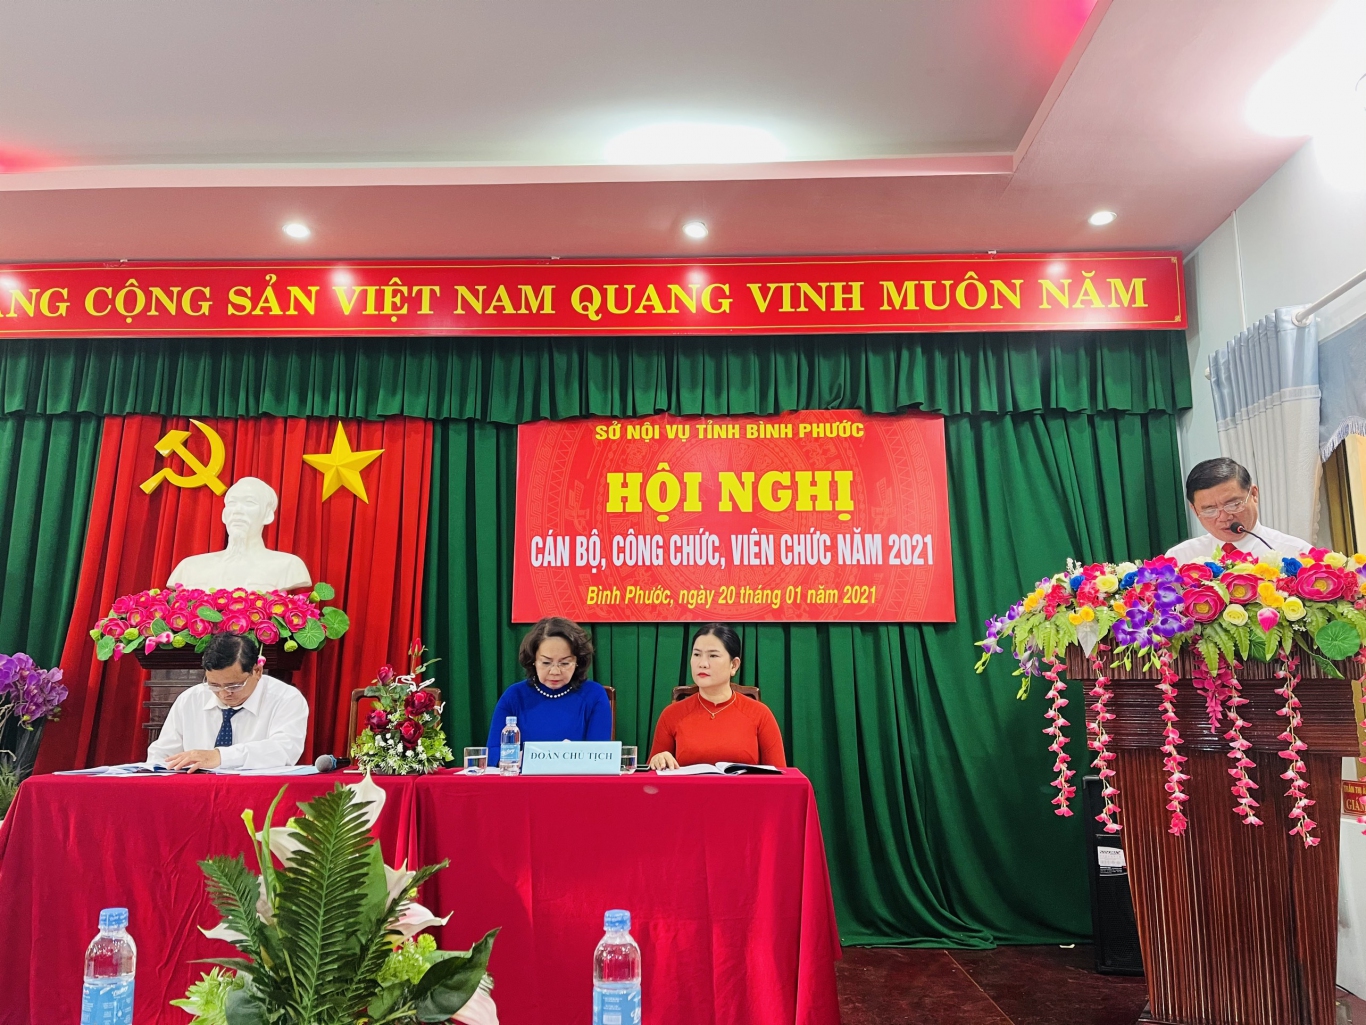 Hội nghị công chức năm 2024: Năm 2024 sẽ là một năm đánh dấu cho Hội nghị công chức lớn được tổ chức tại Việt Nam. Đây là dịp để các cán bộ công chức trao đổi kinh nghiệm, học hỏi, tạo đà cho công tác cải cách hành chính ngày càng hoàn thiện và đáp ứng được nhu cầu của người dân.